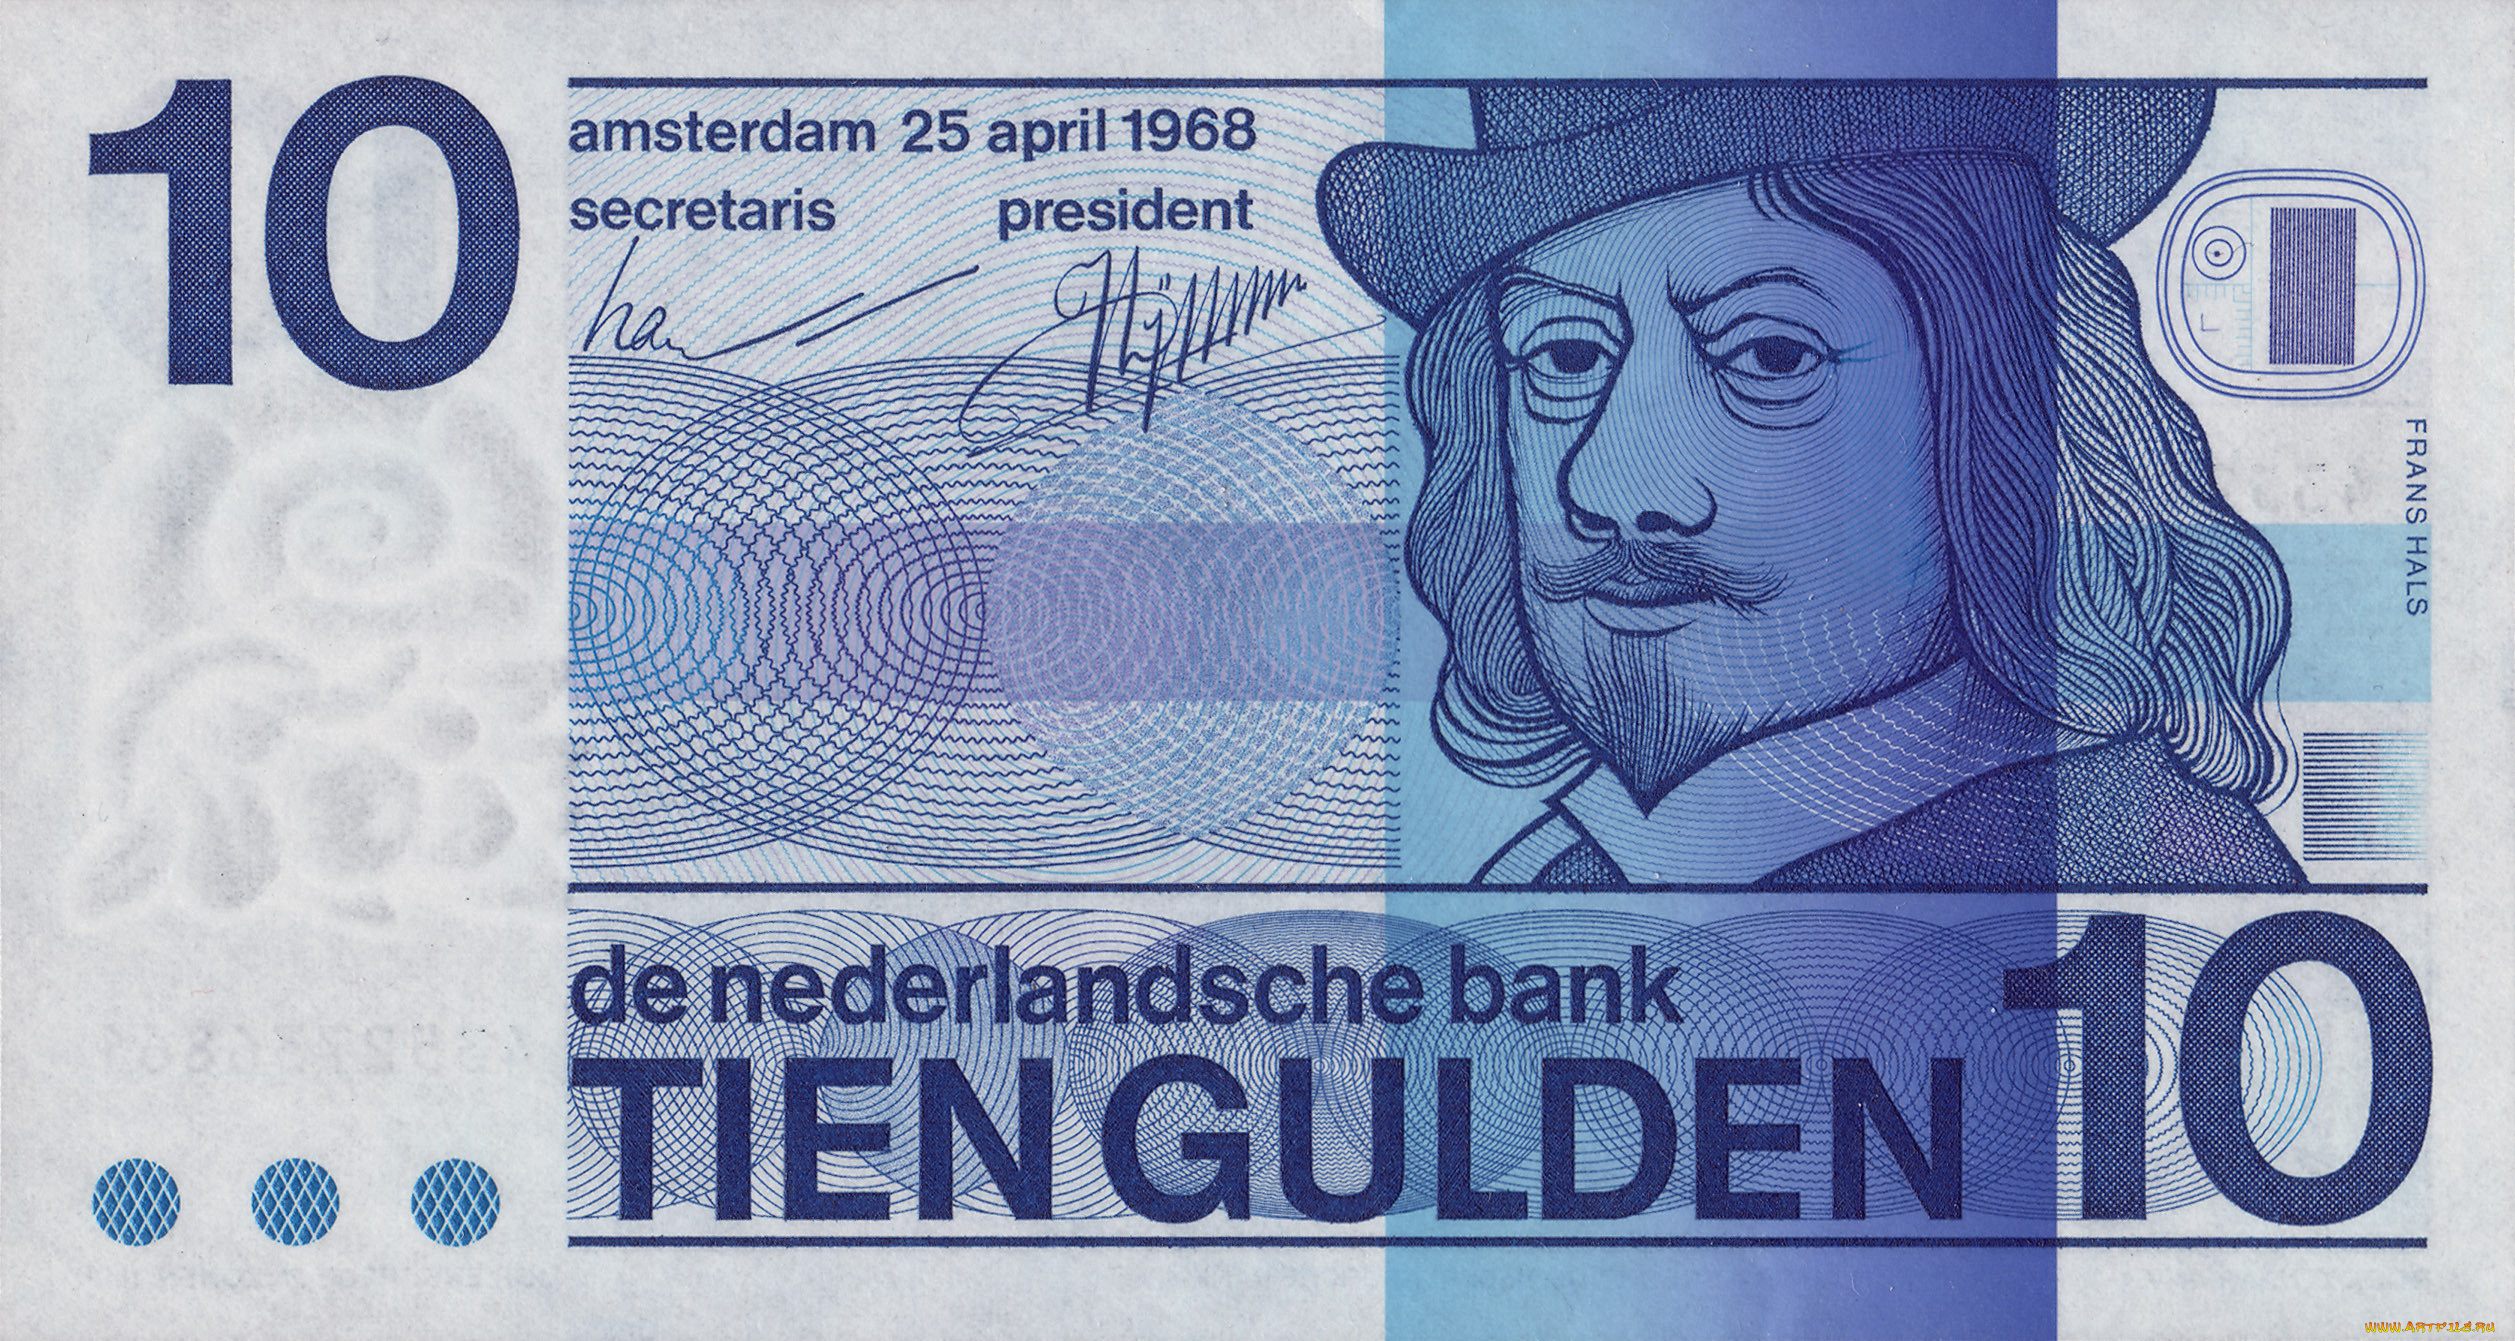 gulden, разное, золото, купюры, монеты, гульден, банкнота, деньги, нидерланды